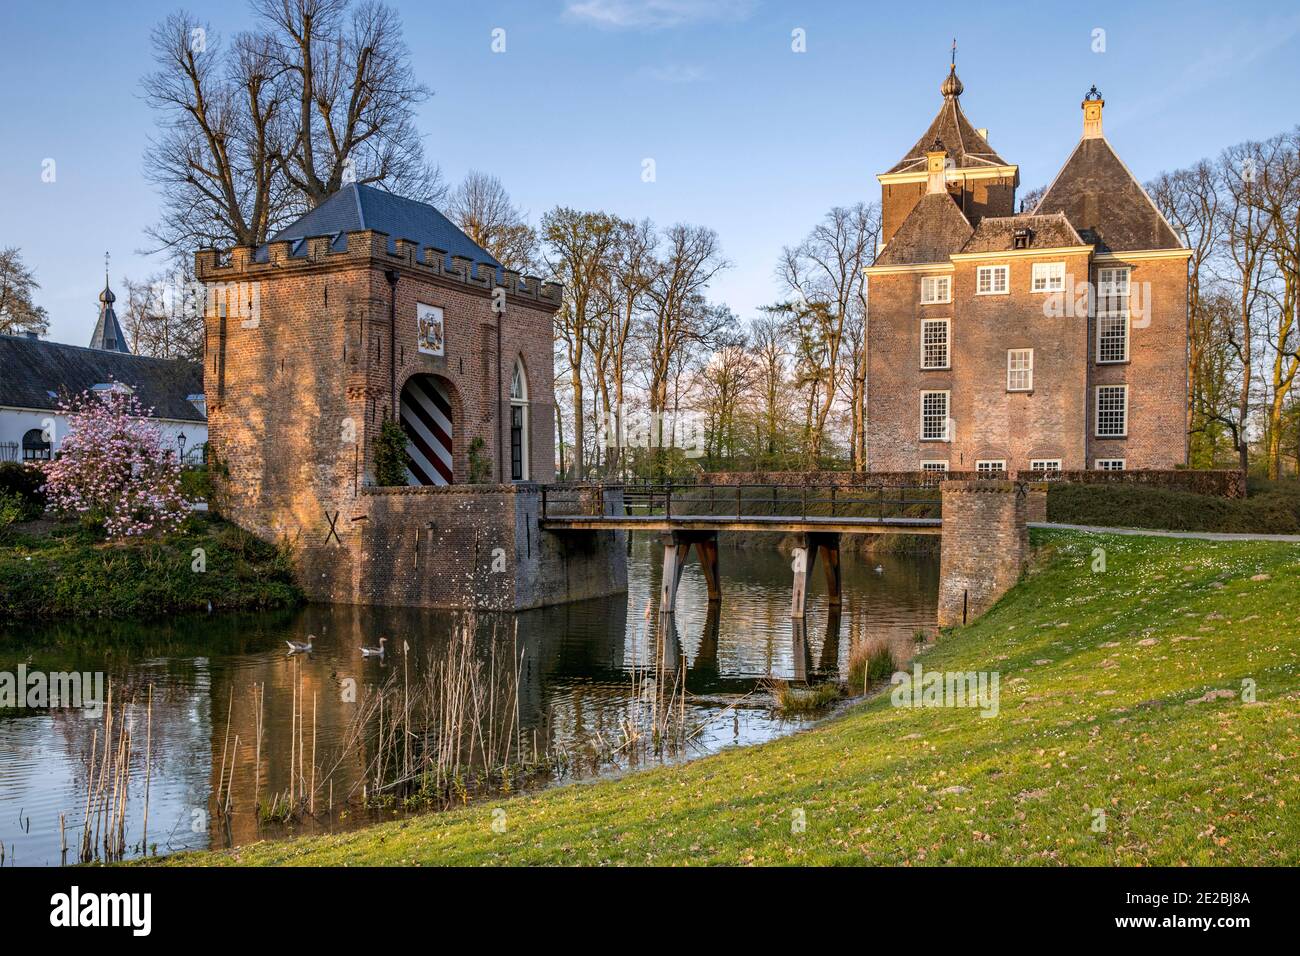 Soelen castillo medieval con puerta de entrada y puente sobre foso en Buren en primavera, Zoelen, Gelderland, los países Bajos Foto de stock